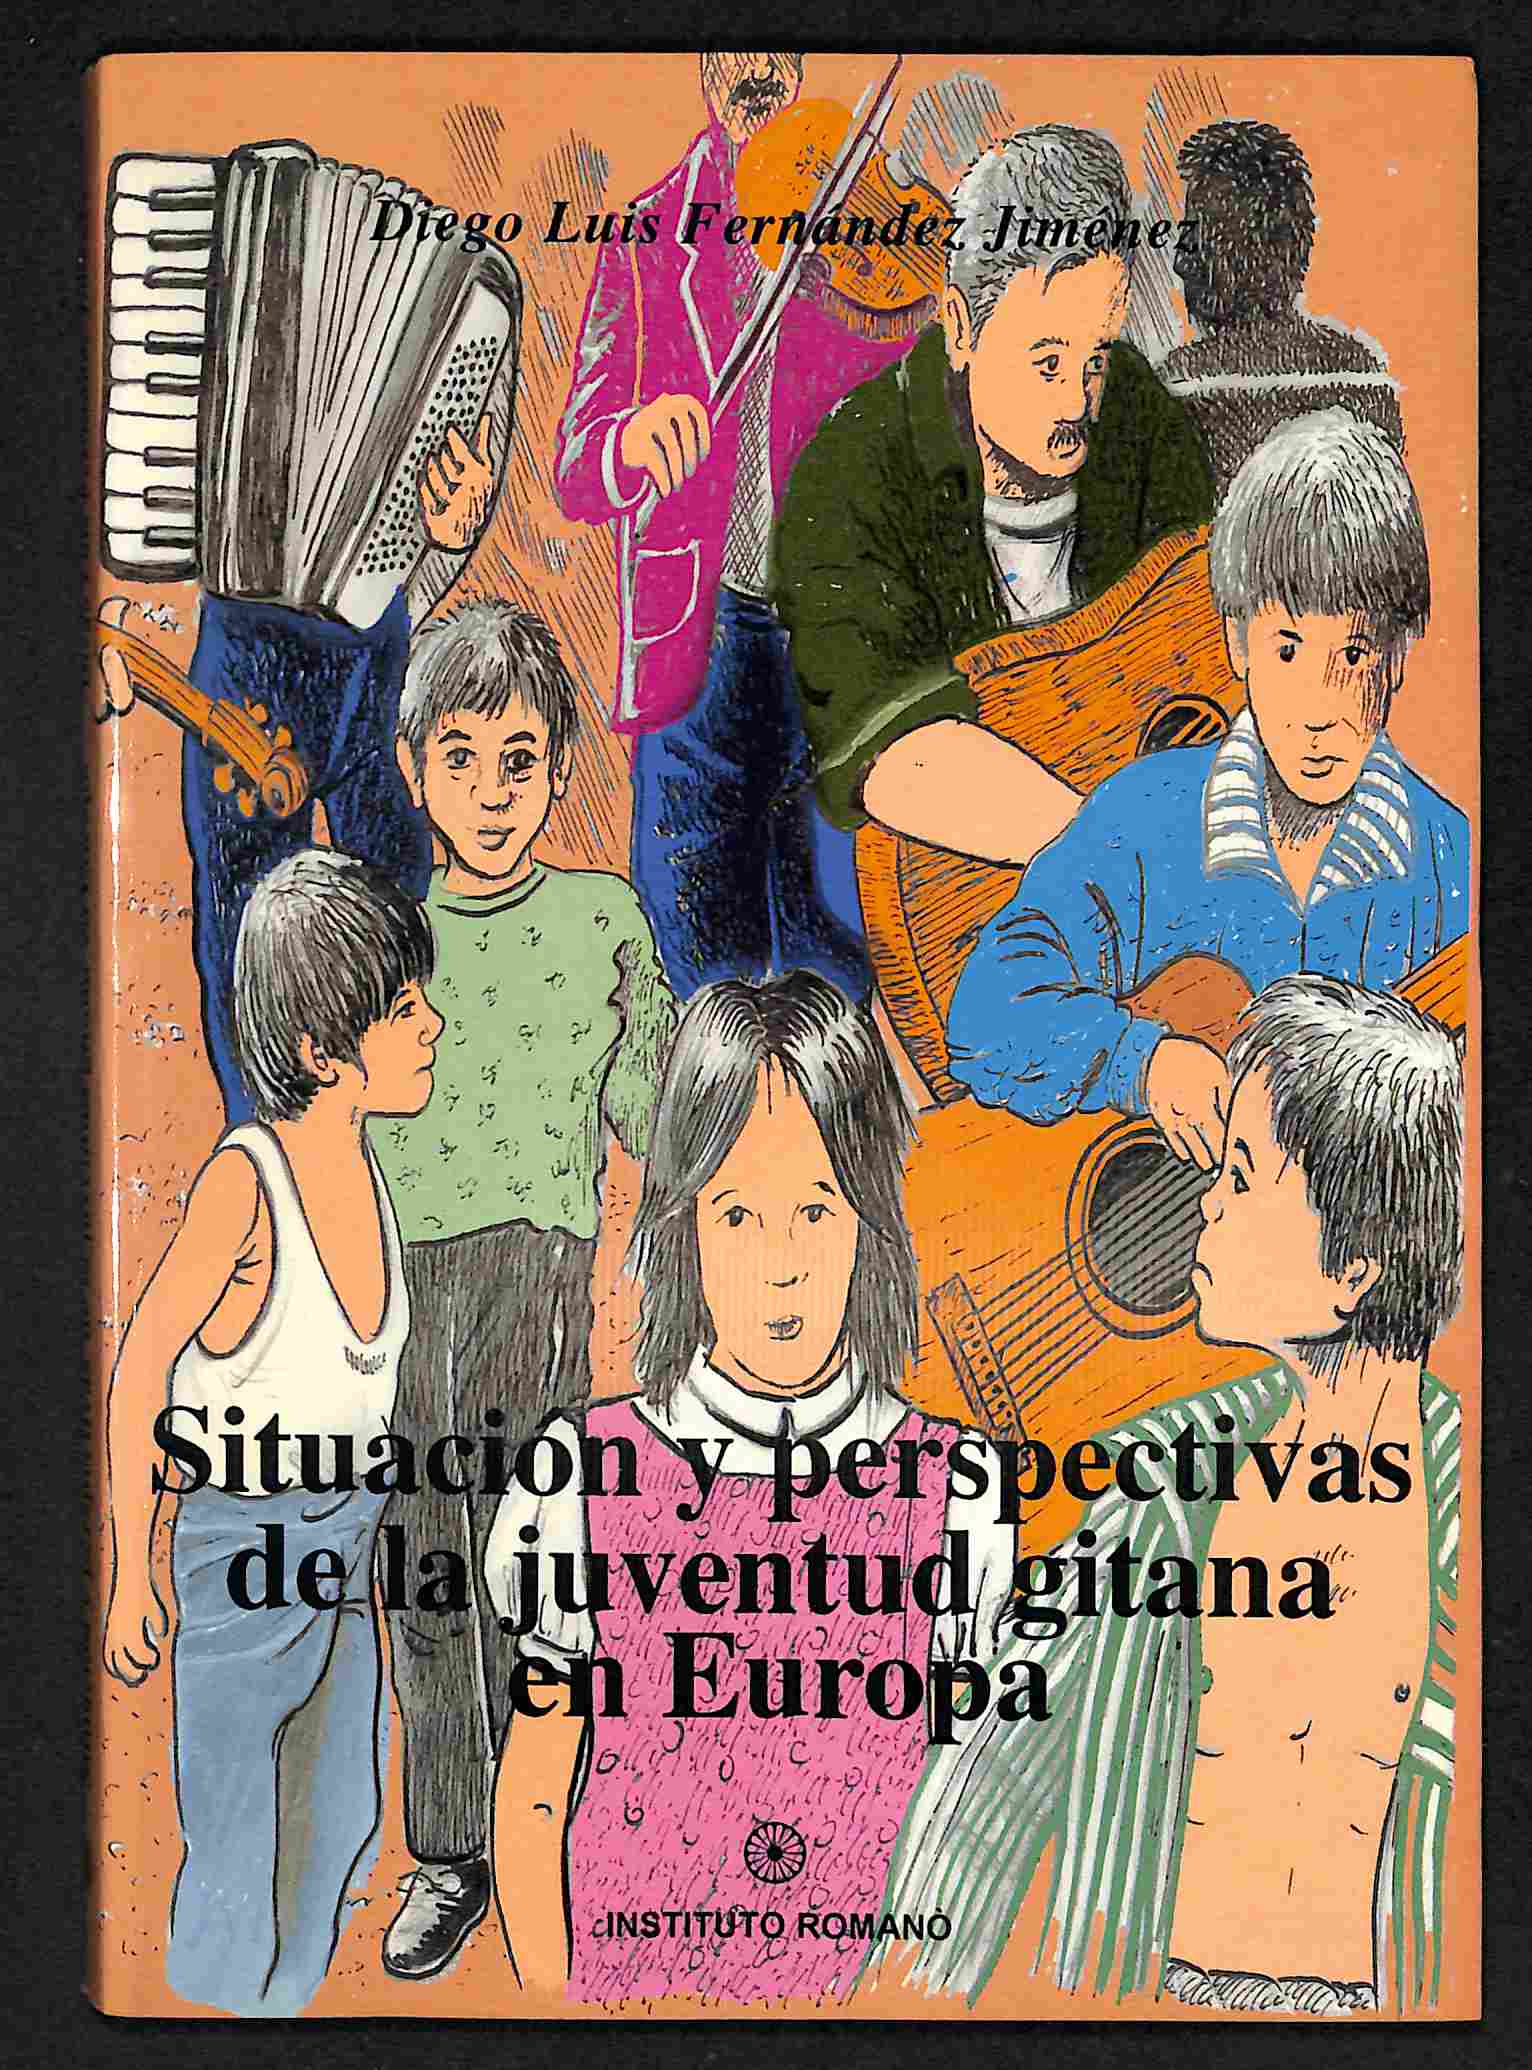 Situación y perspectivas de la juventud gitana en Europa - Diego Luis Fernández Jiménez (abogado)